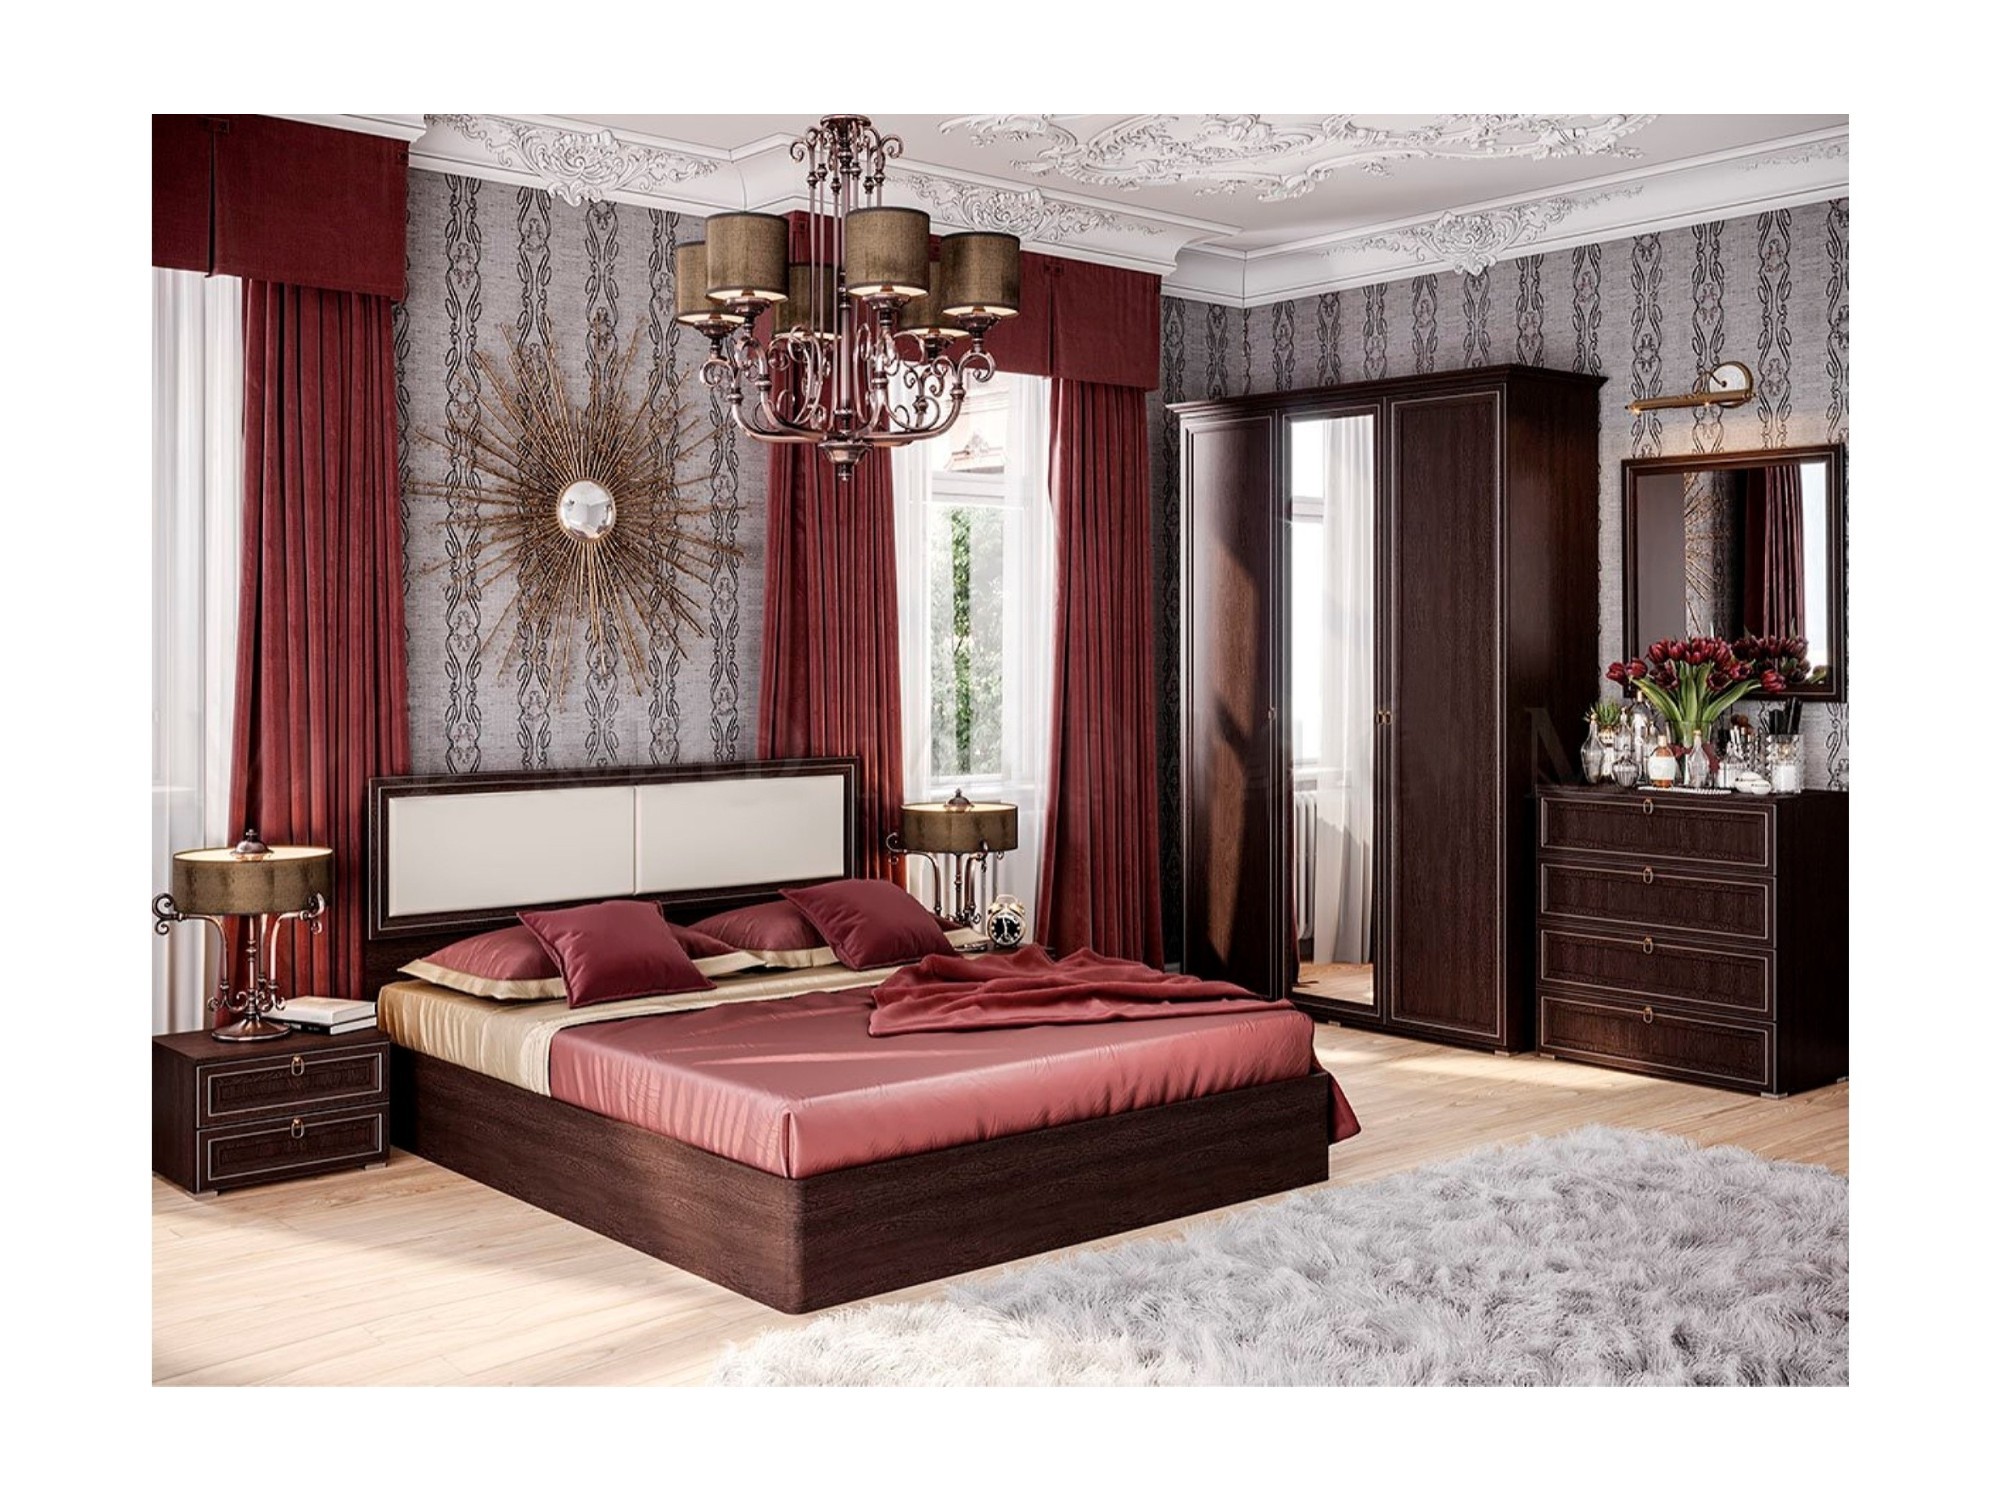 Модульная спальня Престиж 2, композиция 1 (Венге) Черный, МДФ, ЛДСП модульная гостиная престиж 2 венге венге коричневый темный мдф лдсп